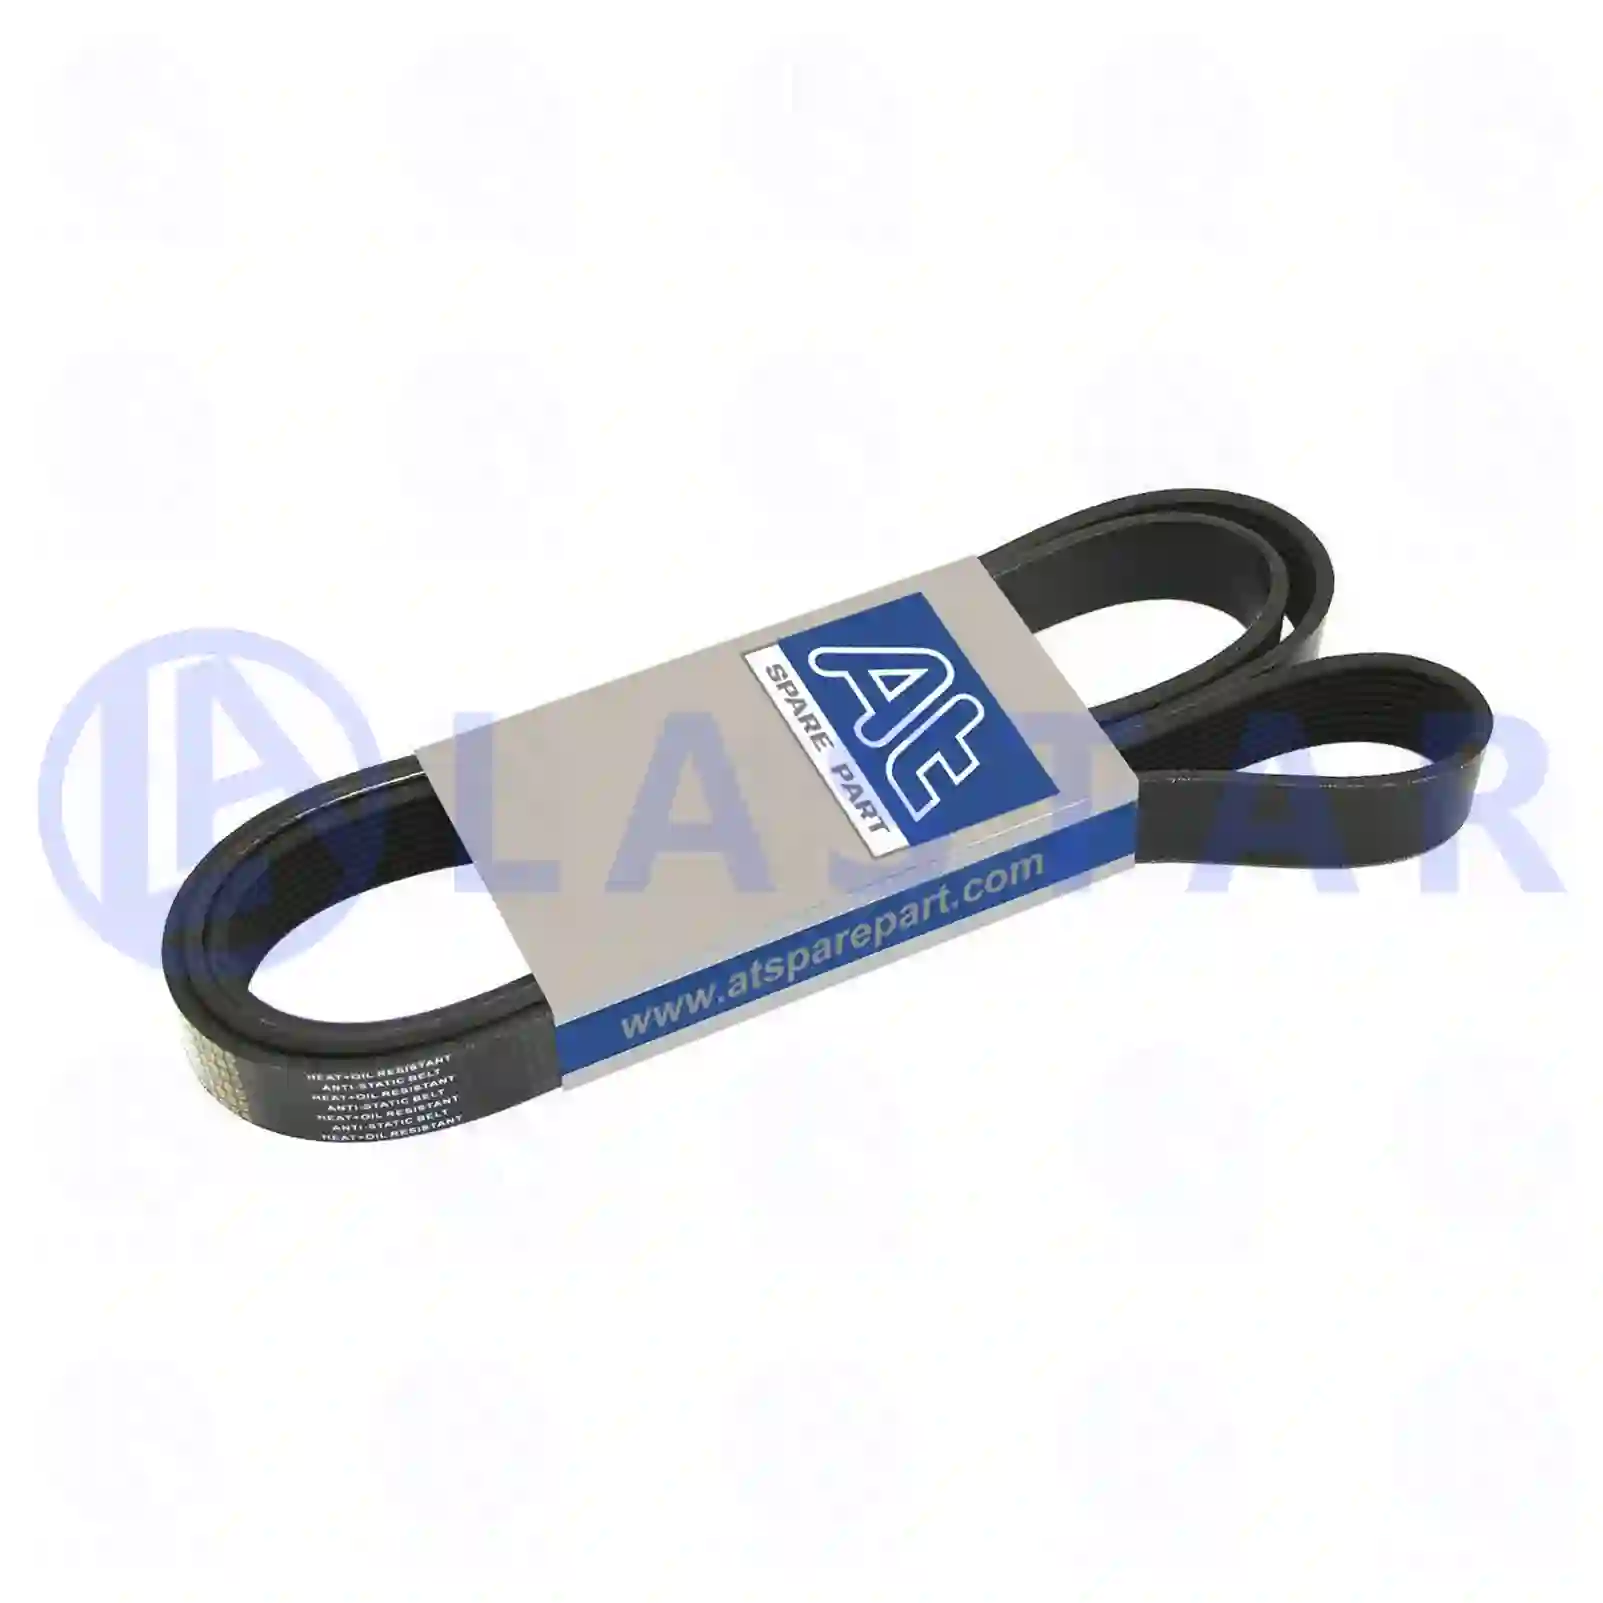 V-Belt / Timing belt Multiribbed belt, la no: 77709367 ,  oem no:977822, ZG01447-0008, , Lastar Spare Part | Truck Spare Parts, Auotomotive Spare Parts